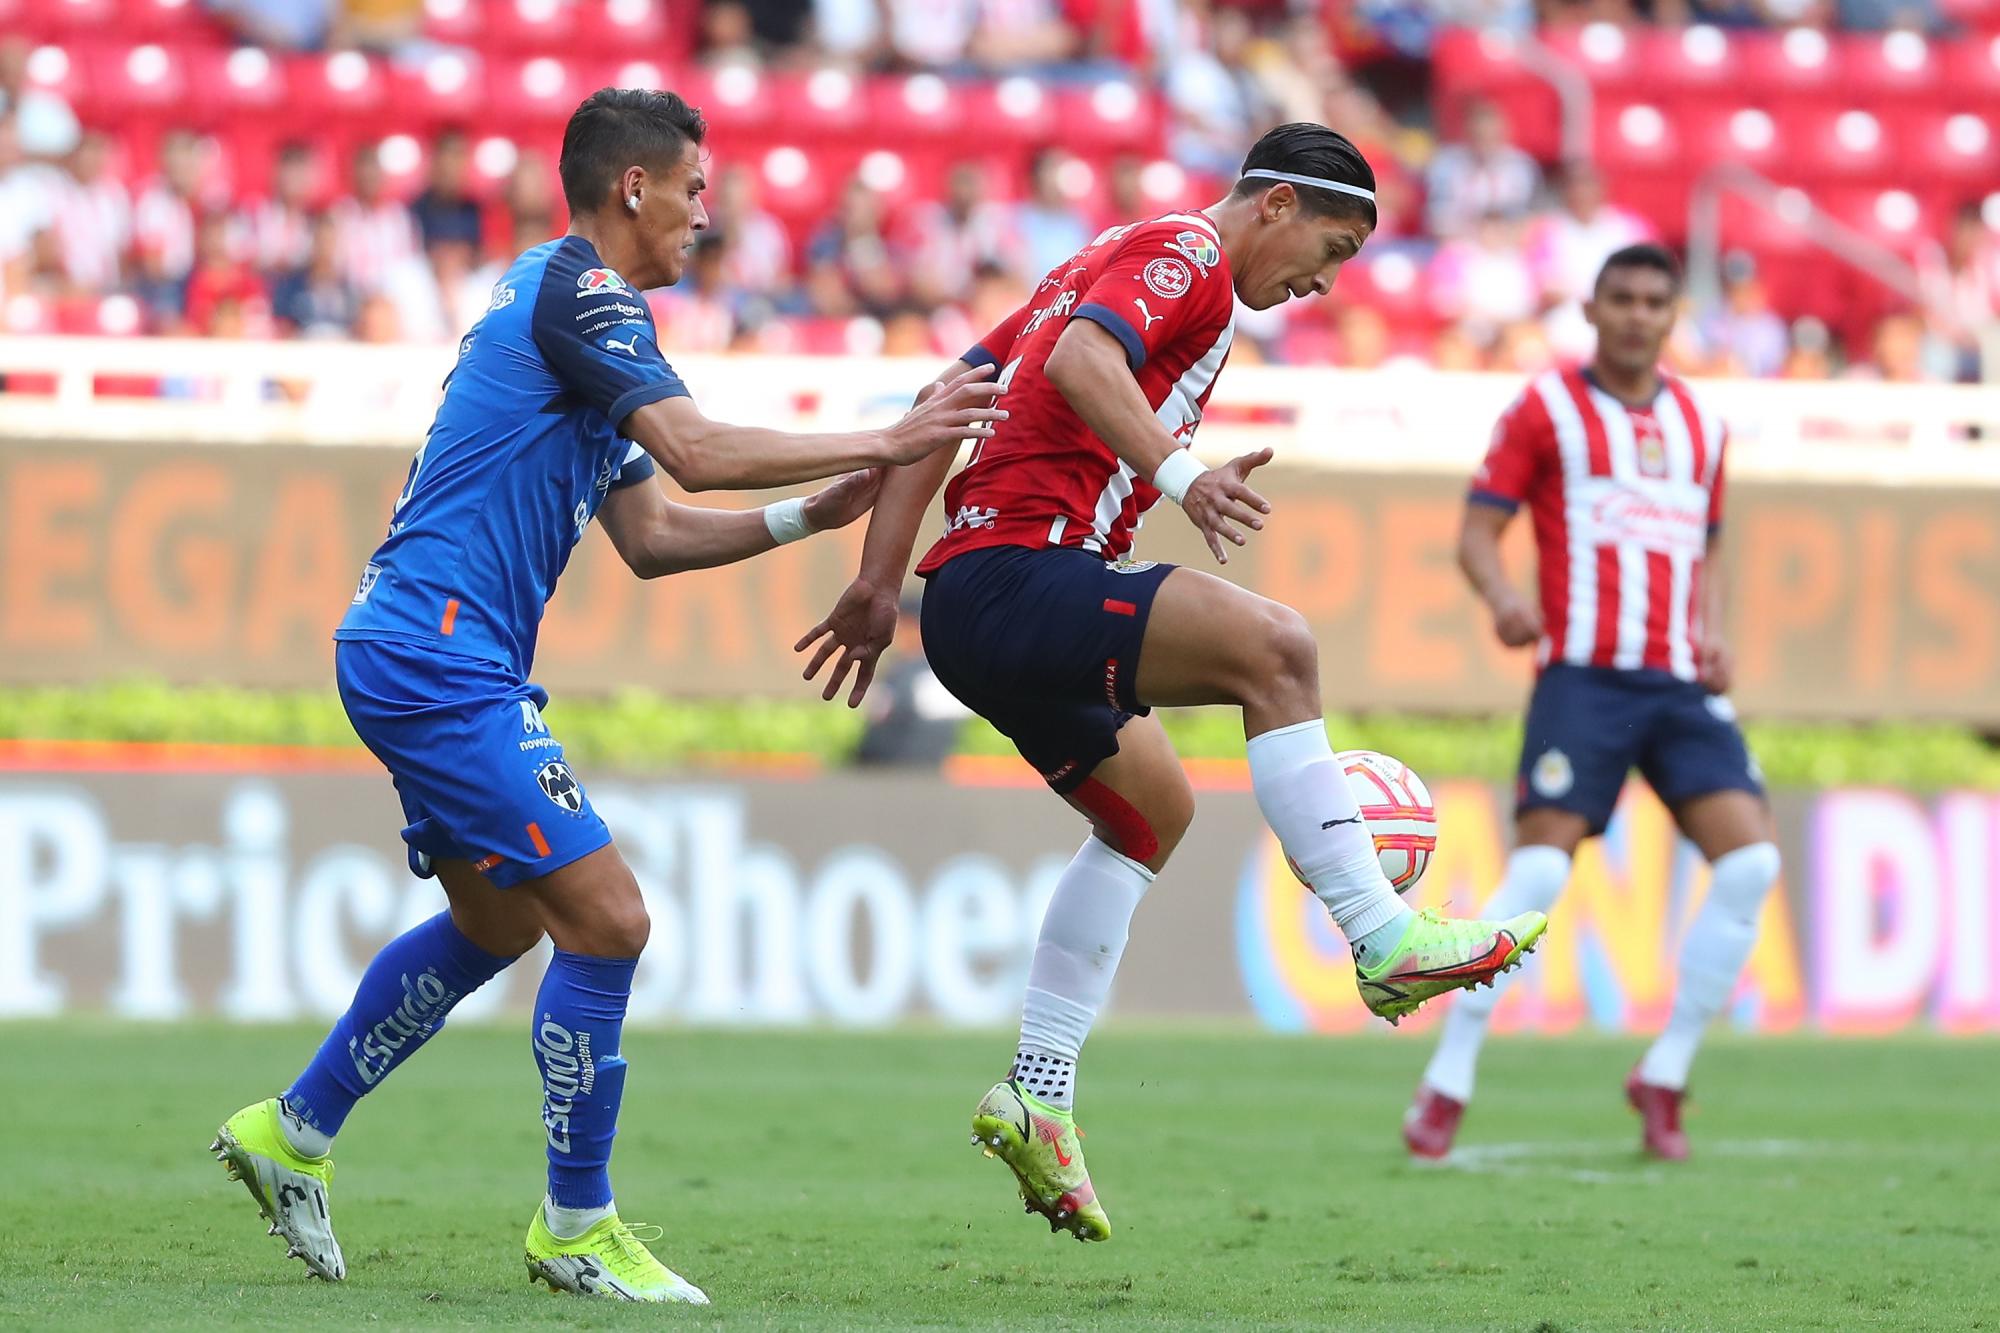 $!Chivas sorprende al derrotar al líder Monterrey con gol de Santiago Ormeño